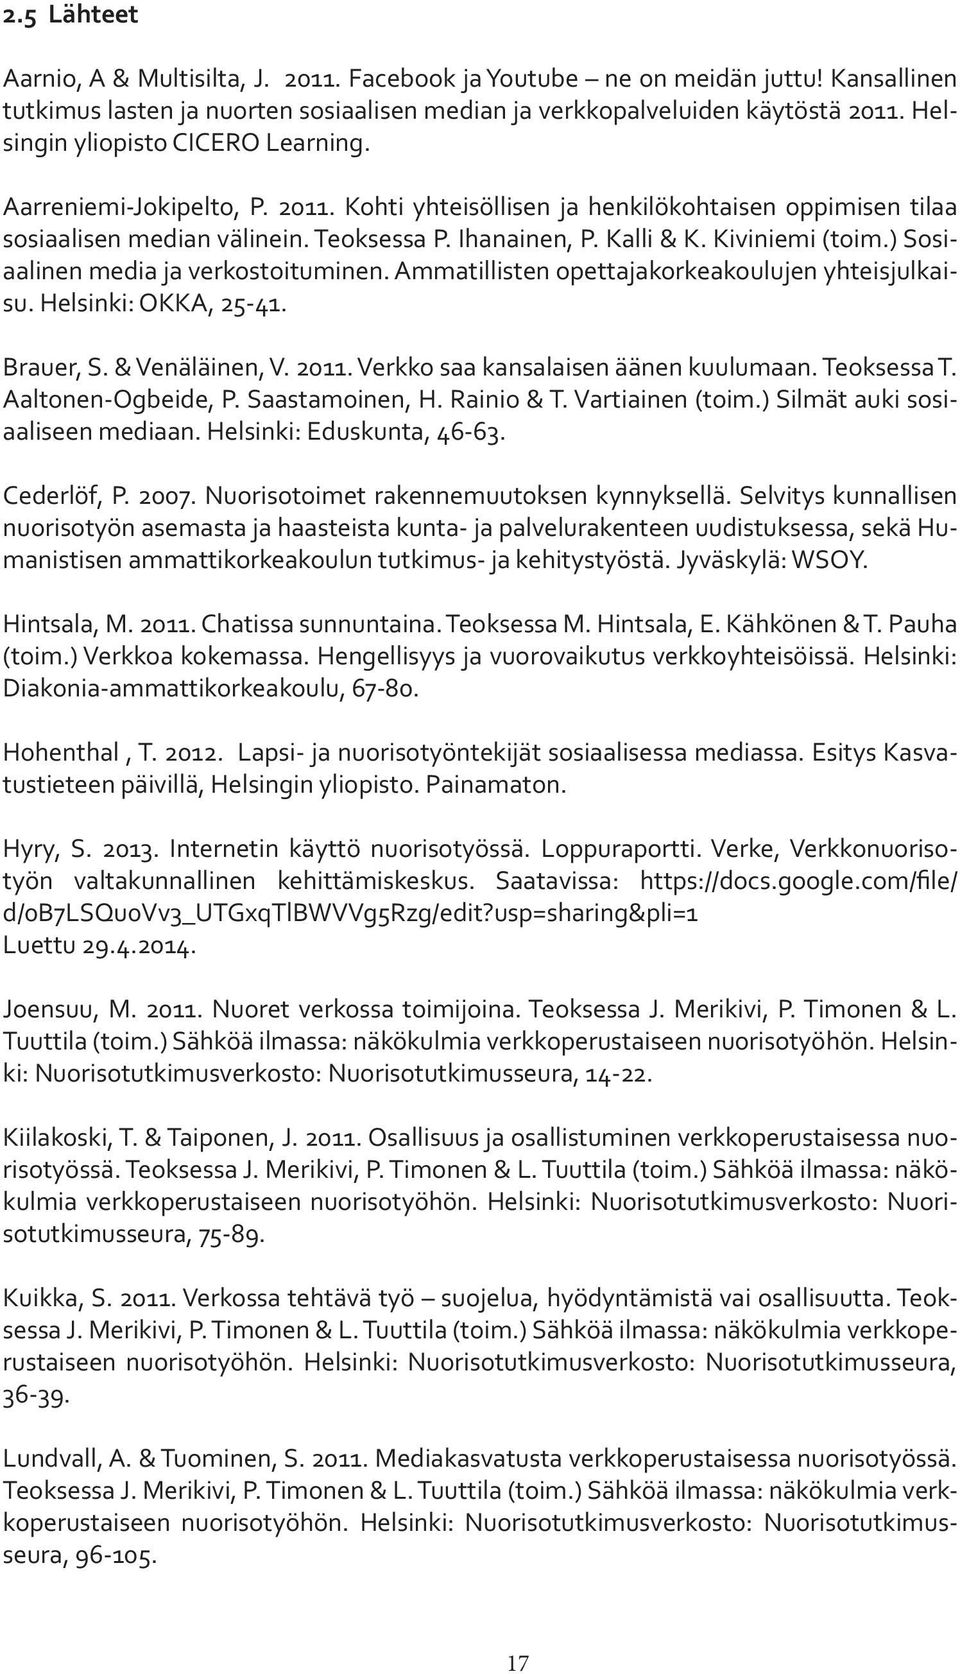 Kiviniemi (toim.) Sosiaalinen media ja verkostoituminen. Ammatillisten opettajakorkeakoulujen yhteisjulkaisu. Helsinki: OKKA, 25-41. Brauer, S. & Venäläinen, V. 2011.